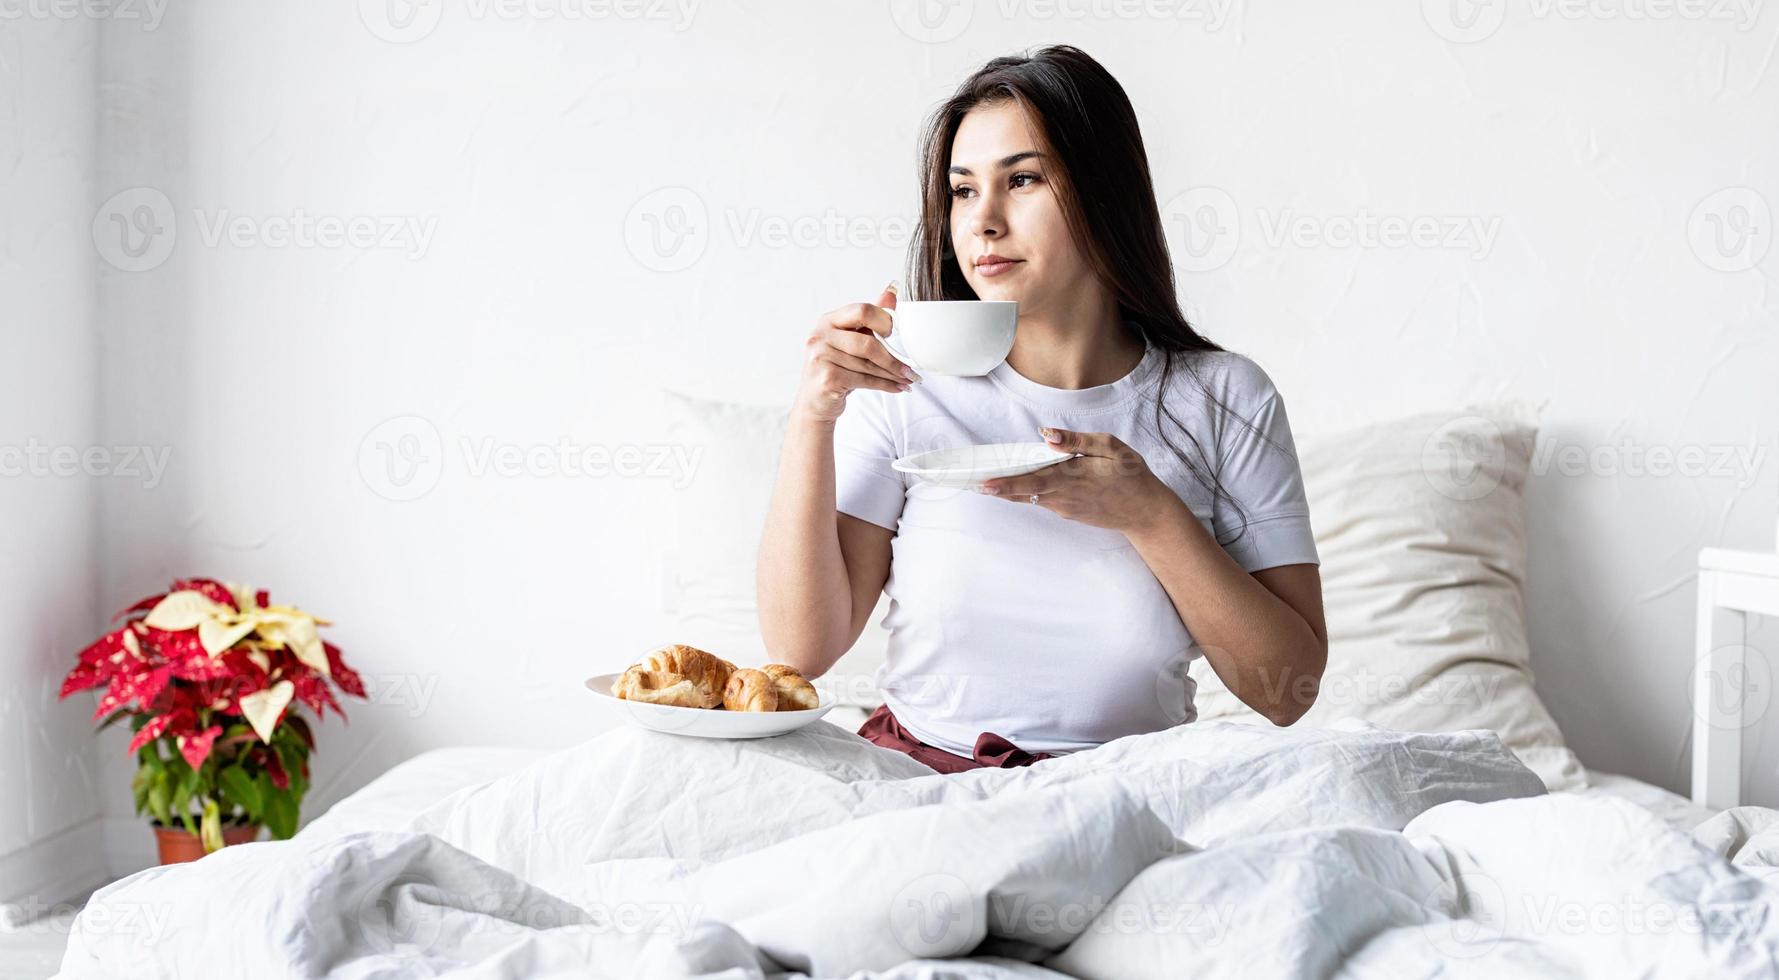 giovane donna bruna seduta sveglia nel letto con palloncini e decorazioni a forma di cuore rosso che bevono caffè mangiando croissant foto